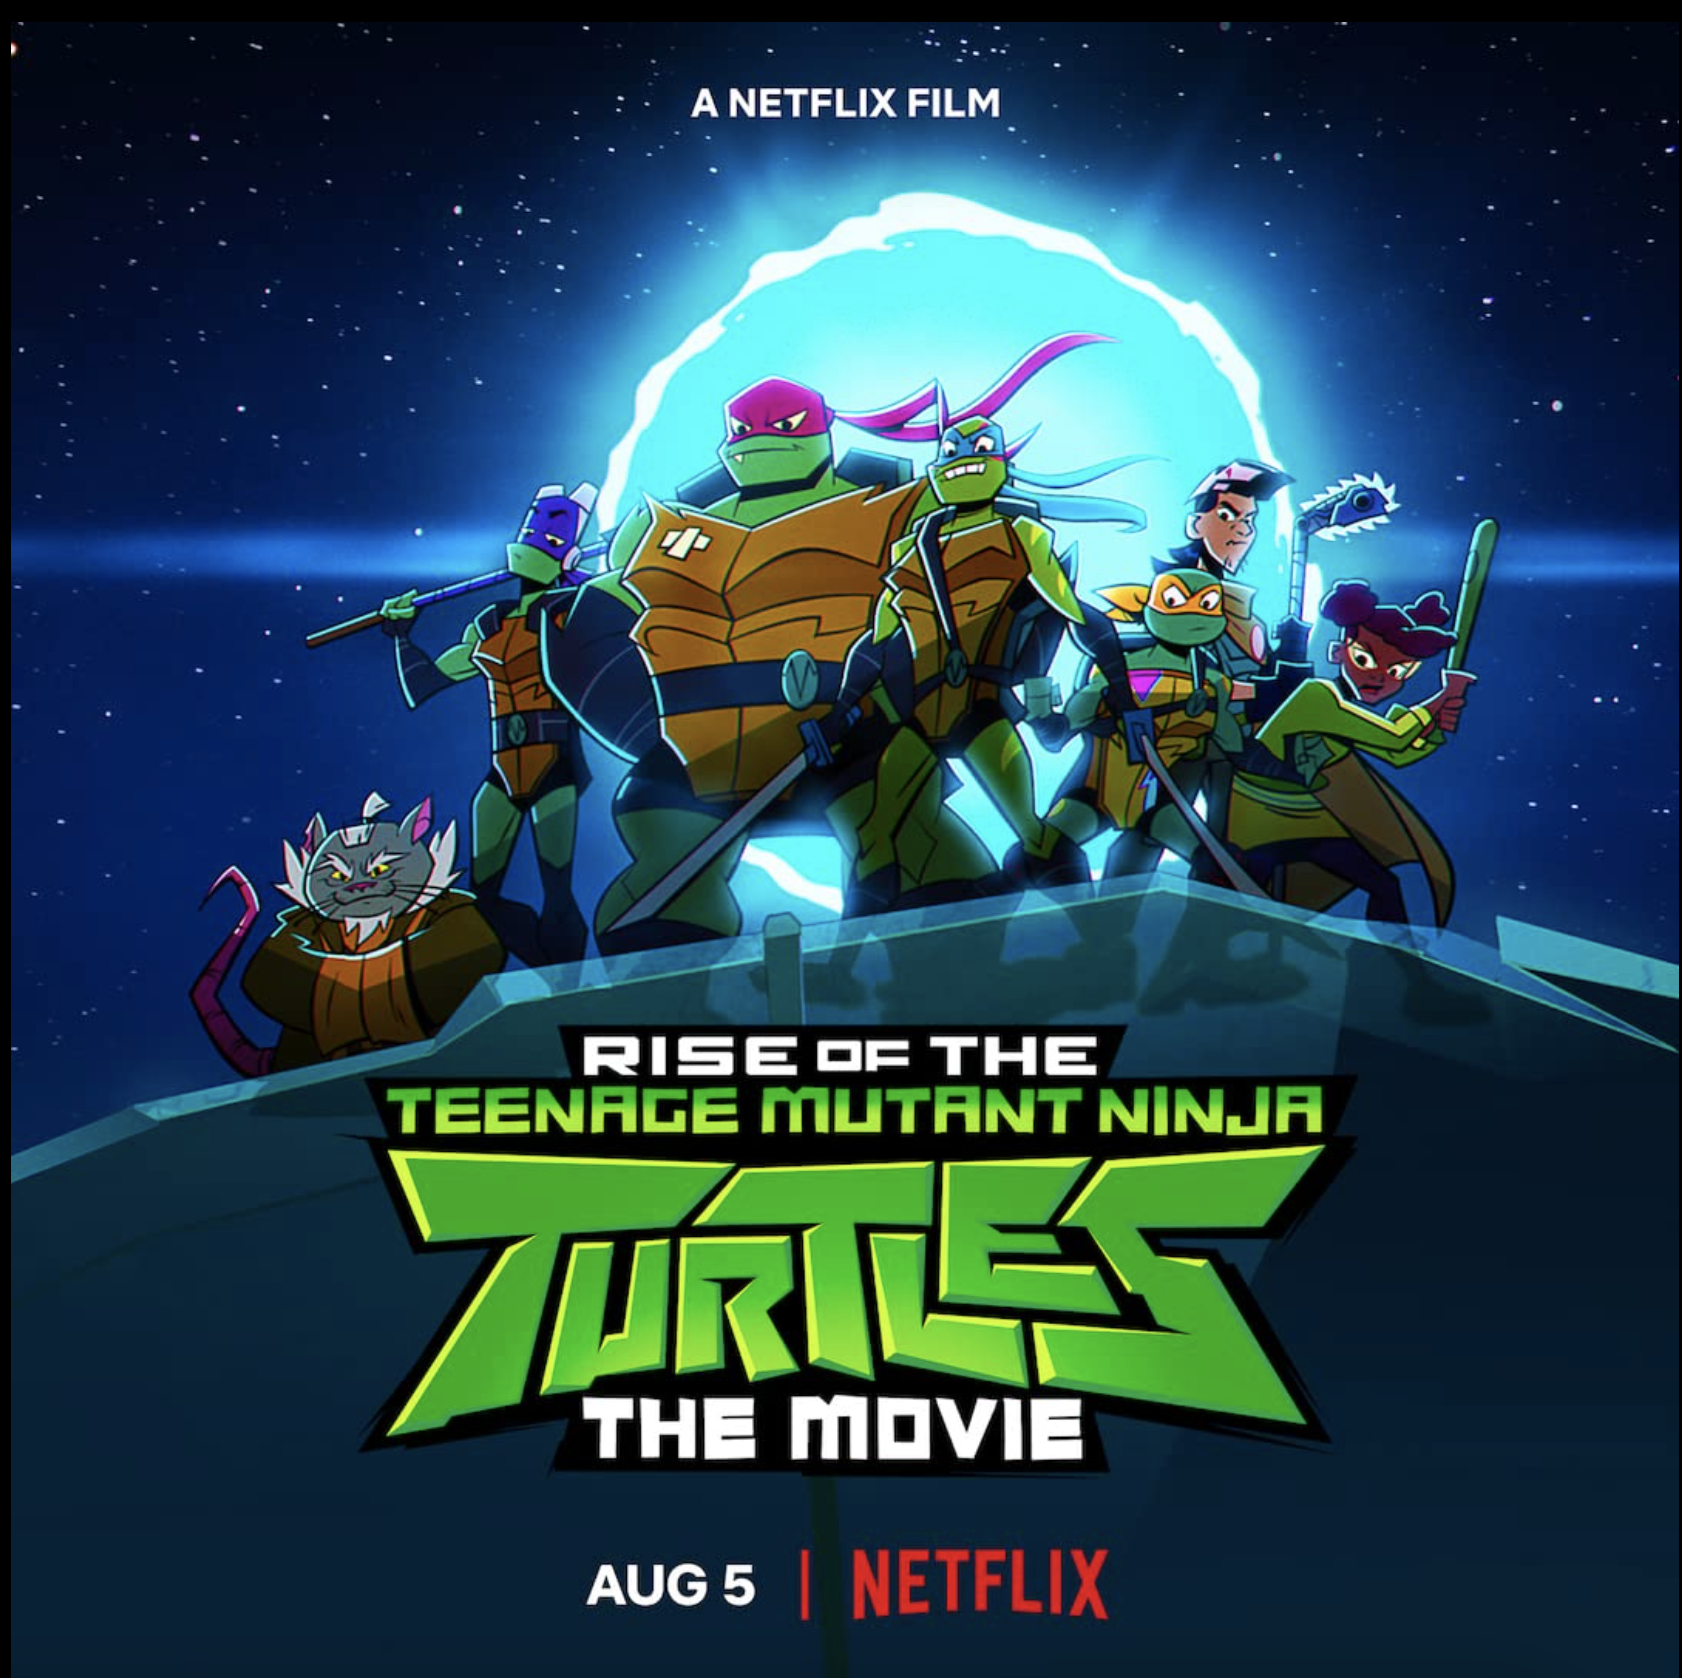 Official Rise of Teenage Mutant Ninja Turtles The Movie Thread August 5 on Netflix